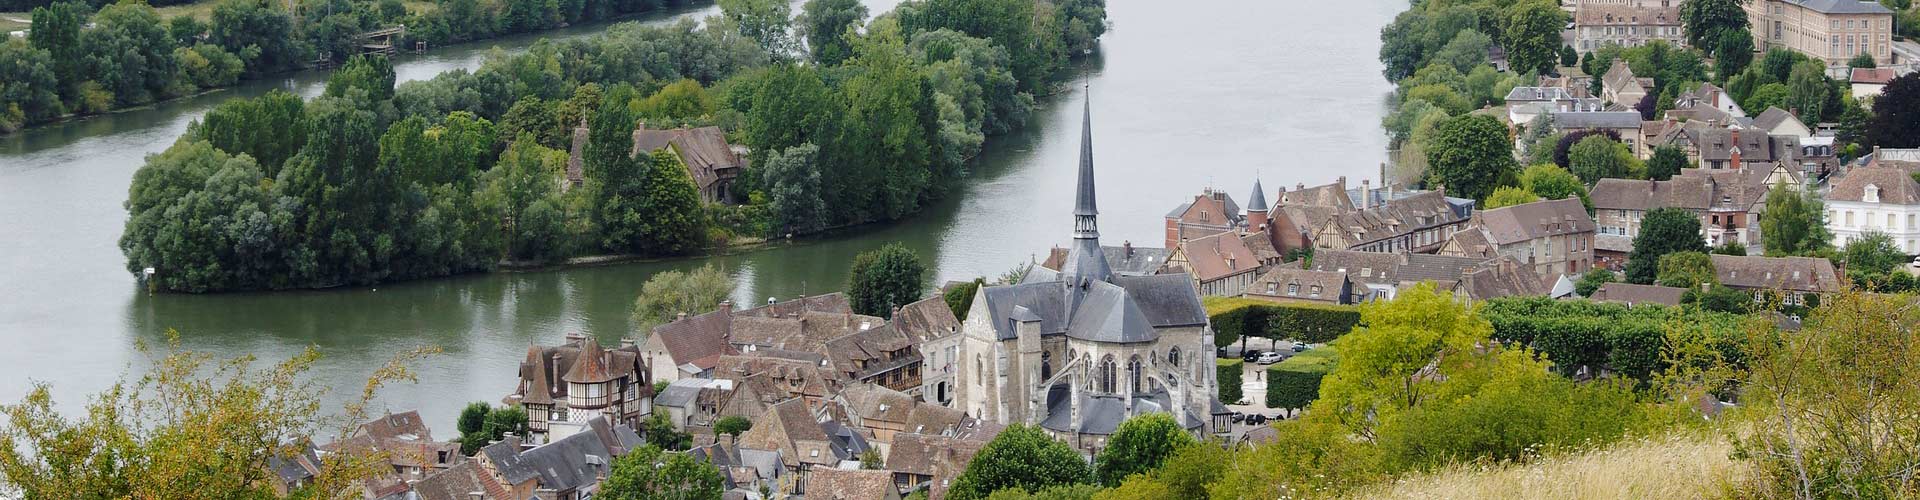 Vue aérienne de Les Andelys au bord de la Seine dans l'Eure